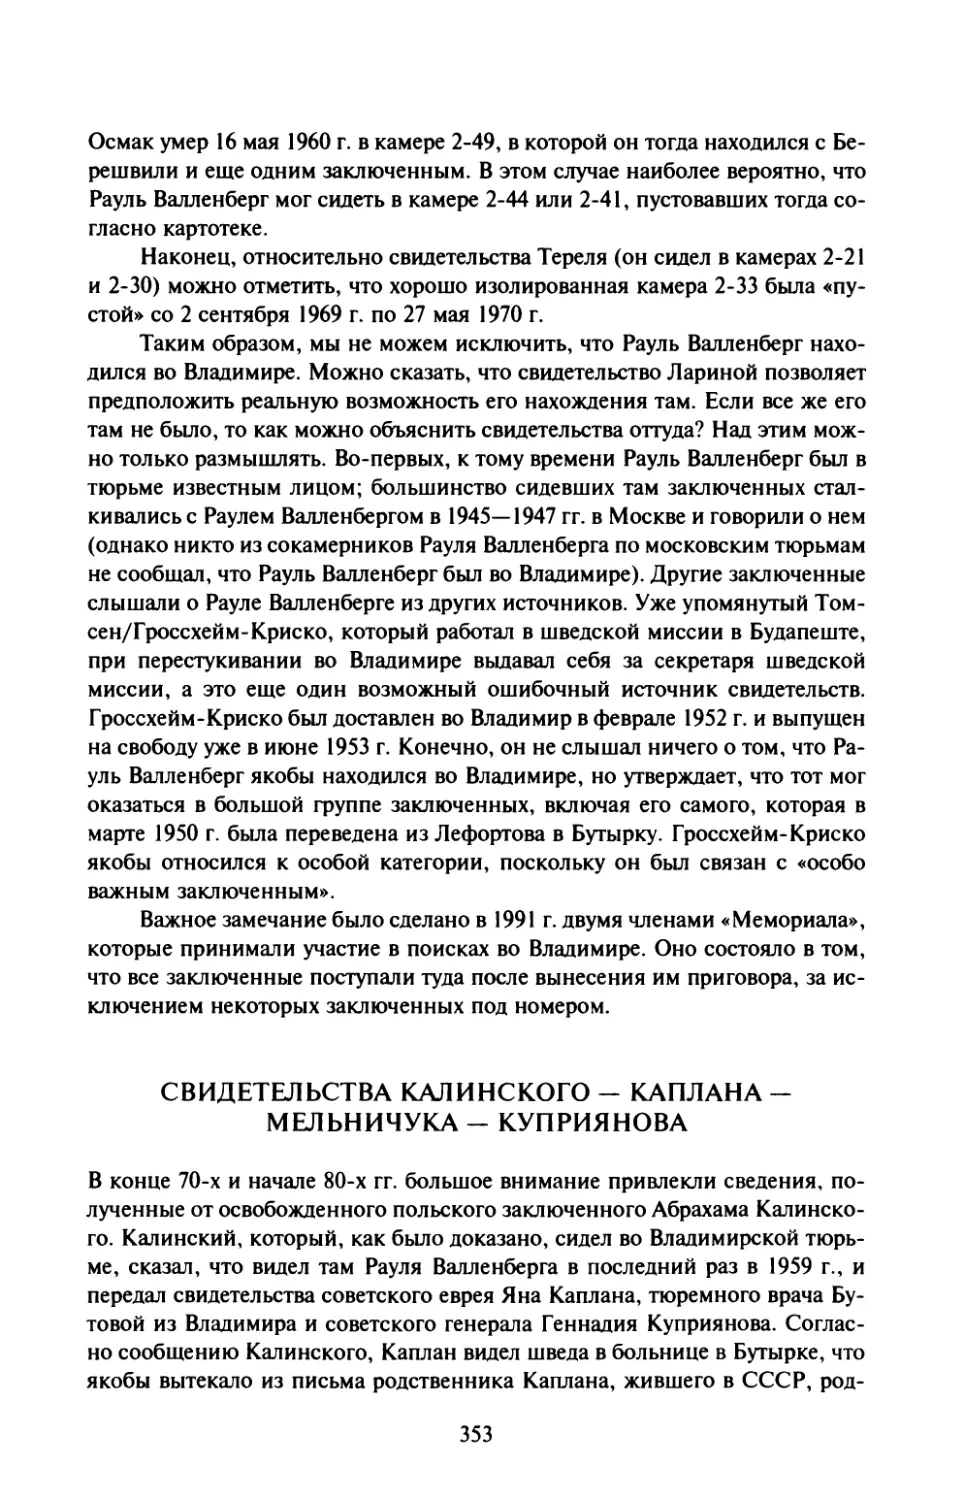 Свидетельства Калинского - Каплана - Мельничука - Куприянова